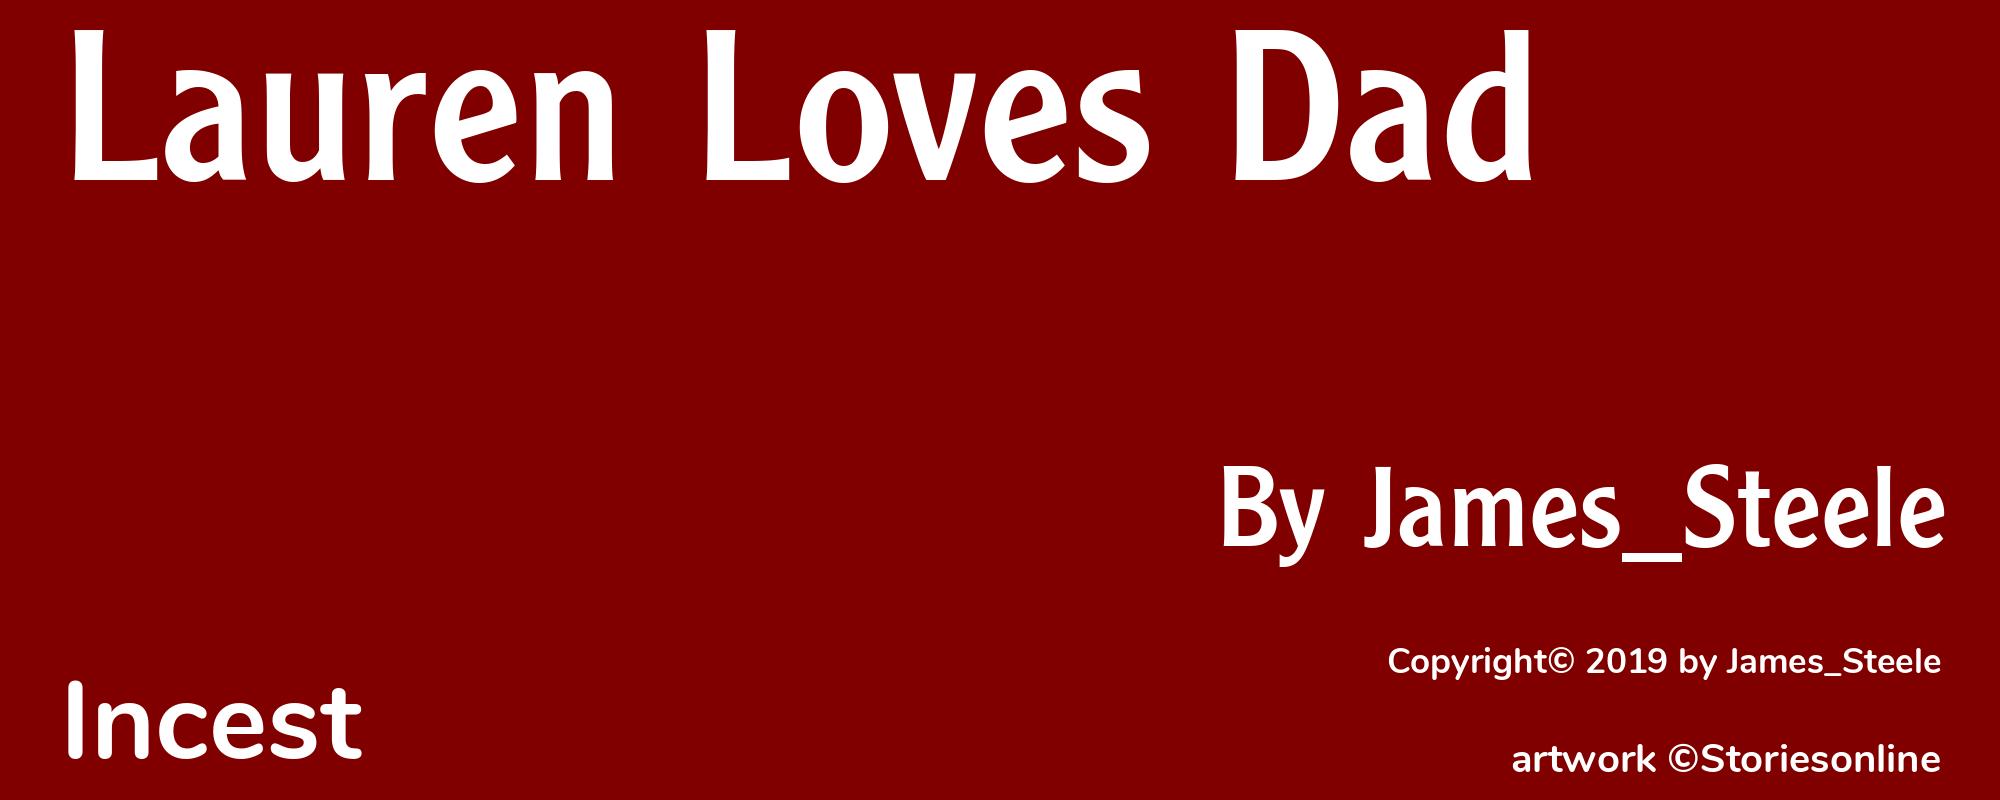 Lauren Loves Dad - Cover